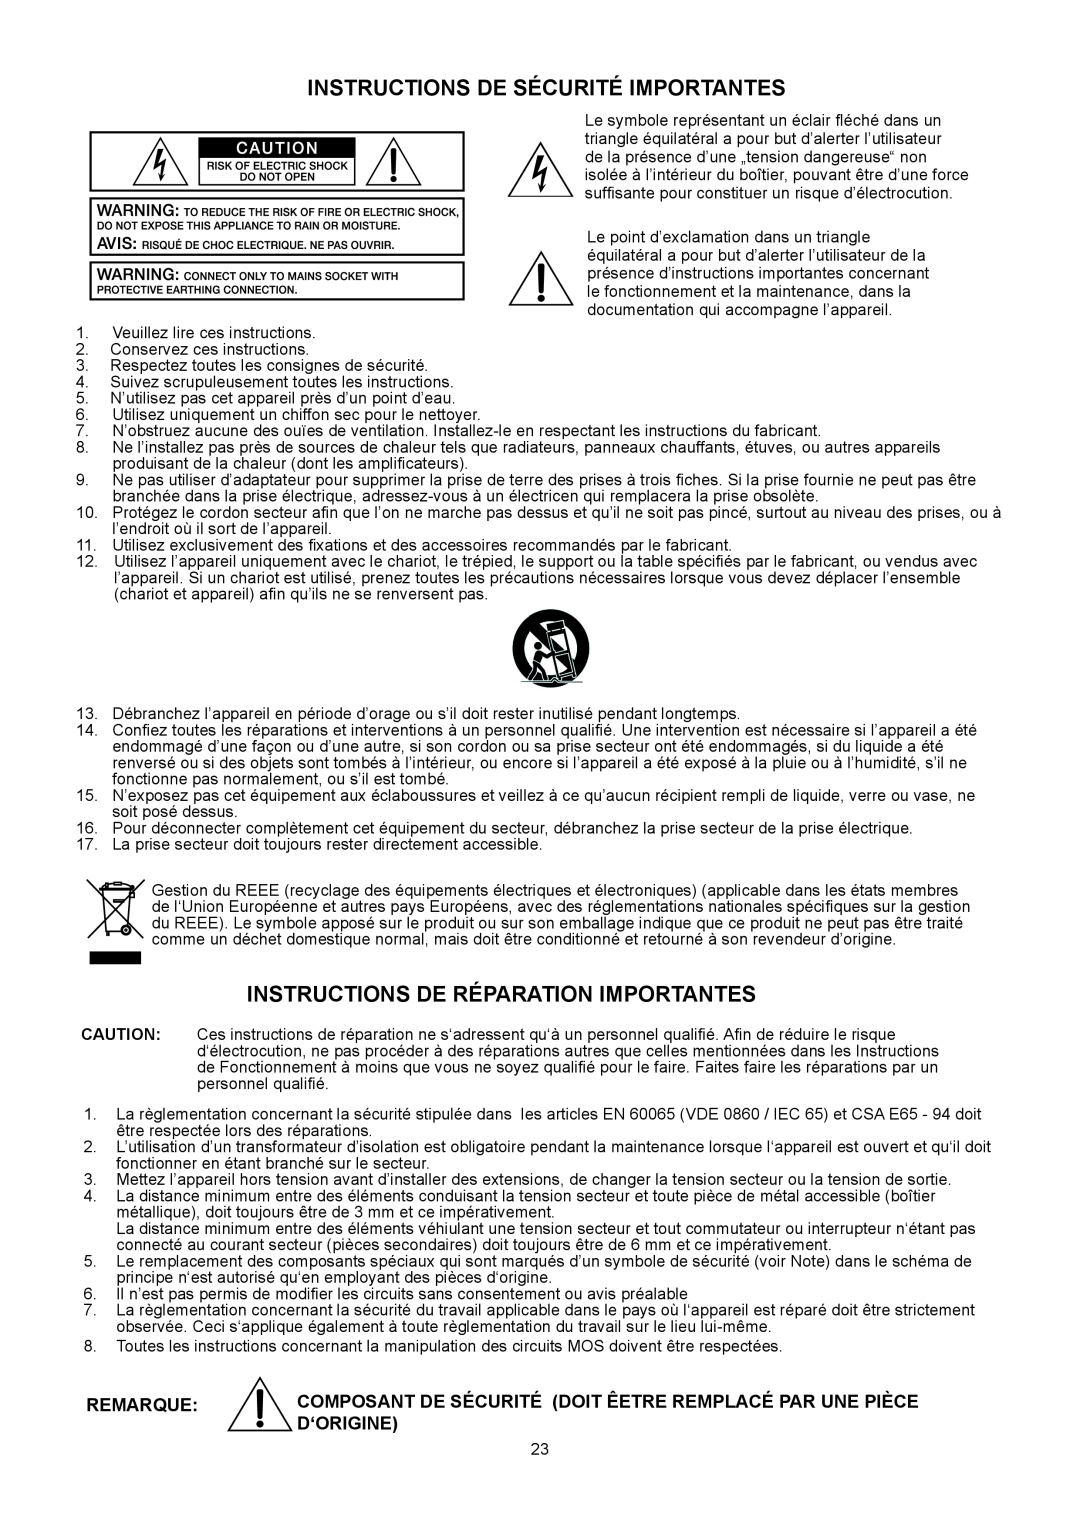 Dynacord CL 800 Instructions De Sécurité Importantes, Instructions De Réparation Importantes, Remarque, D‘Origine 